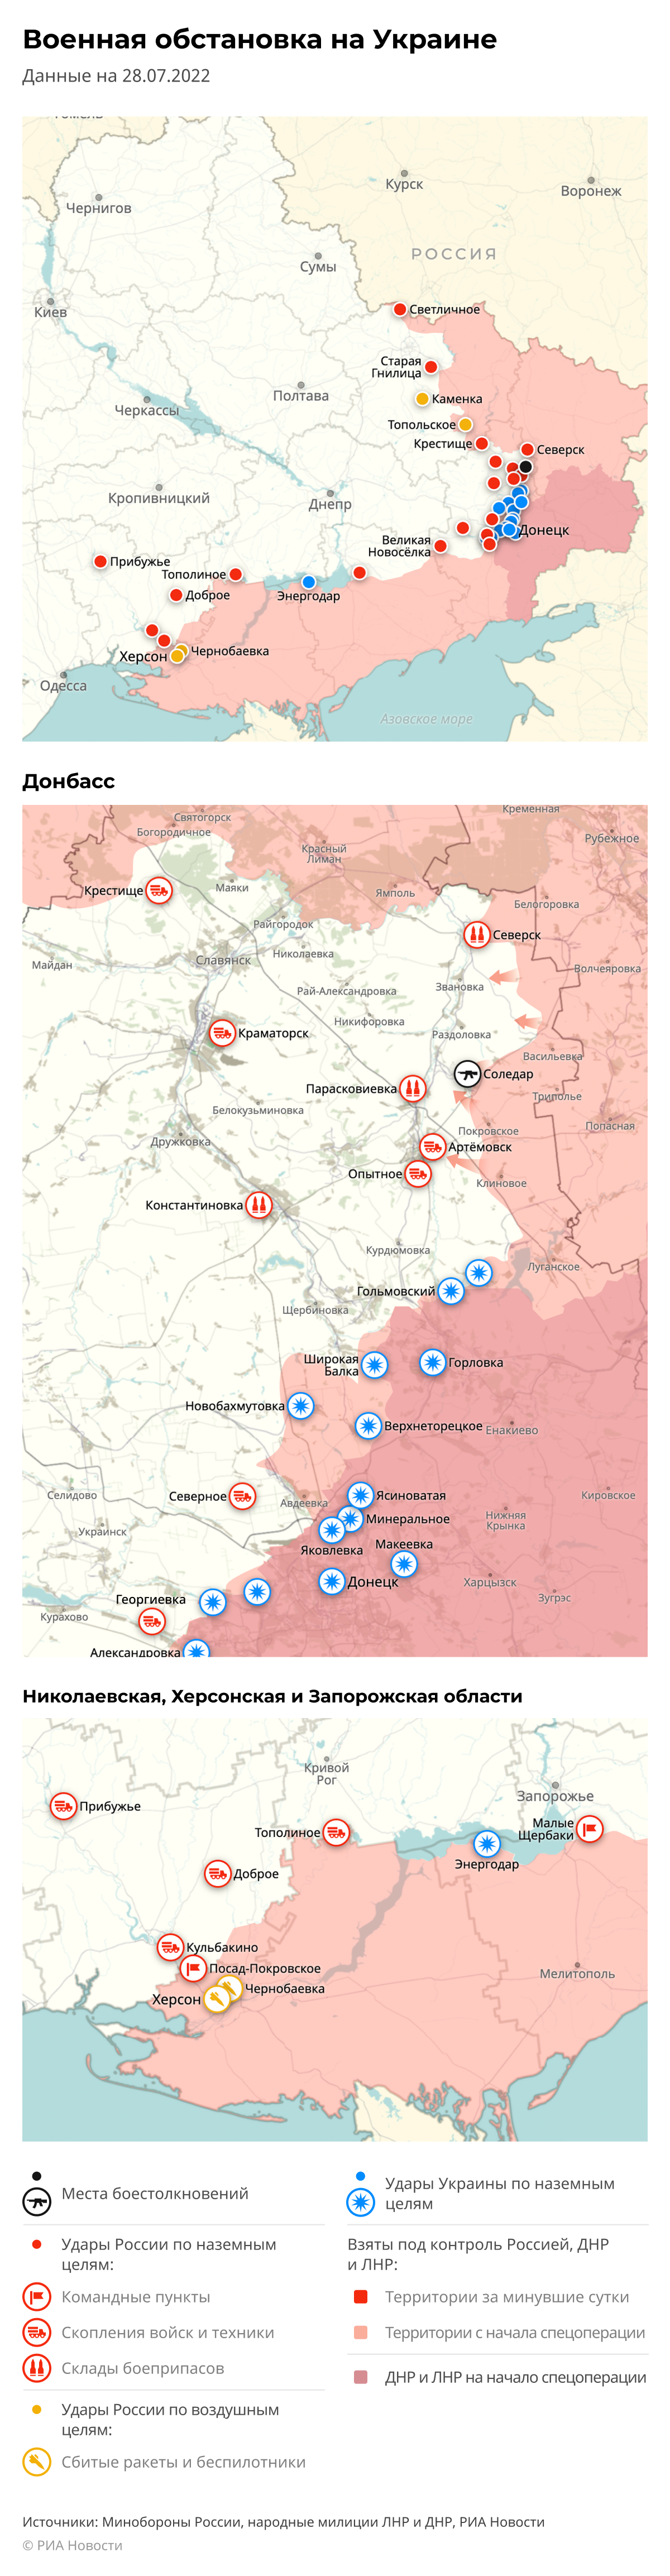 Карта спецоперации Вооруженных сил России на Украине на 28.07.2022